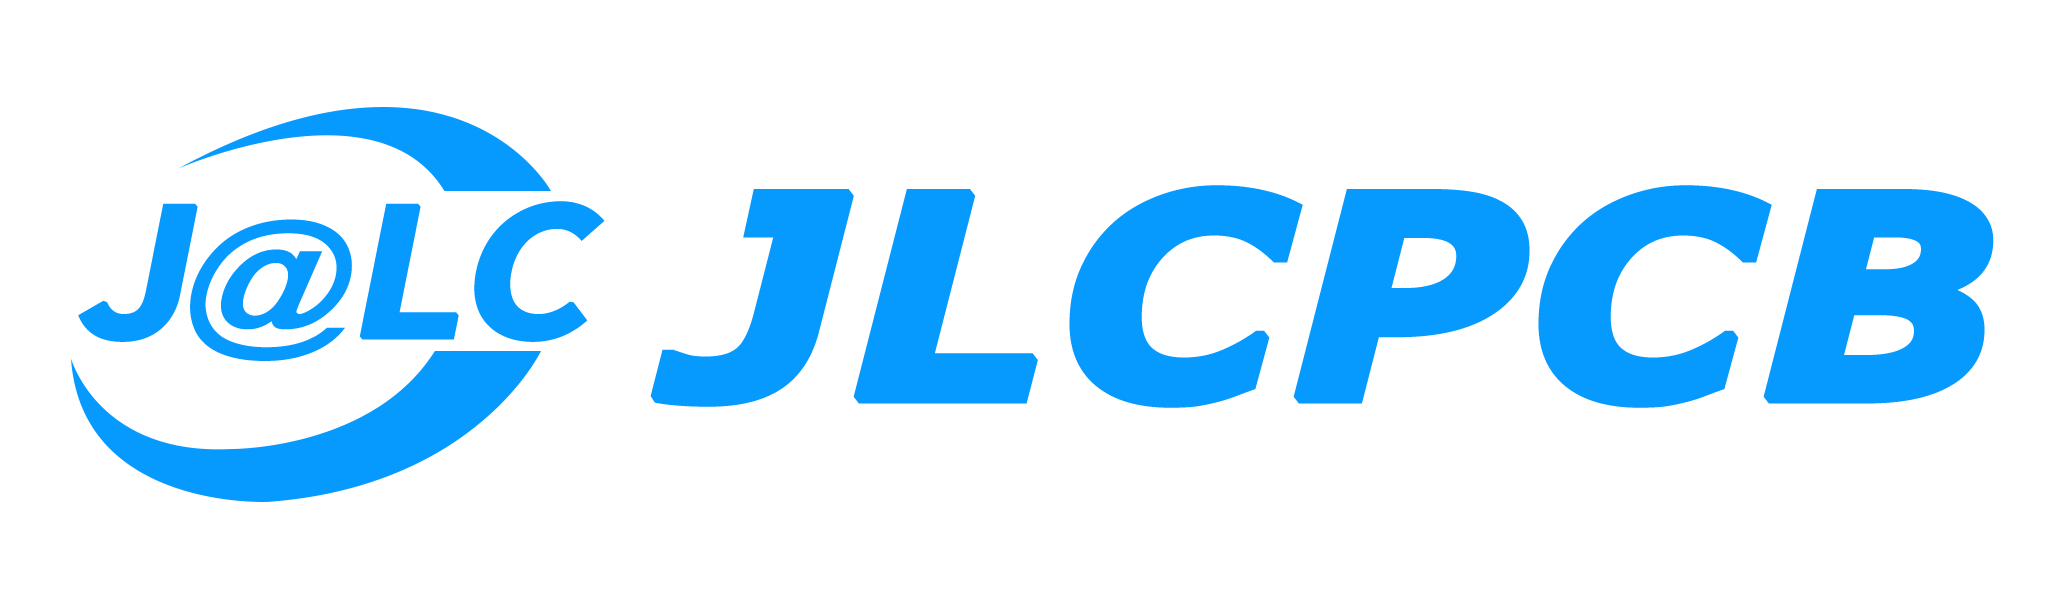 jlc_logo.png